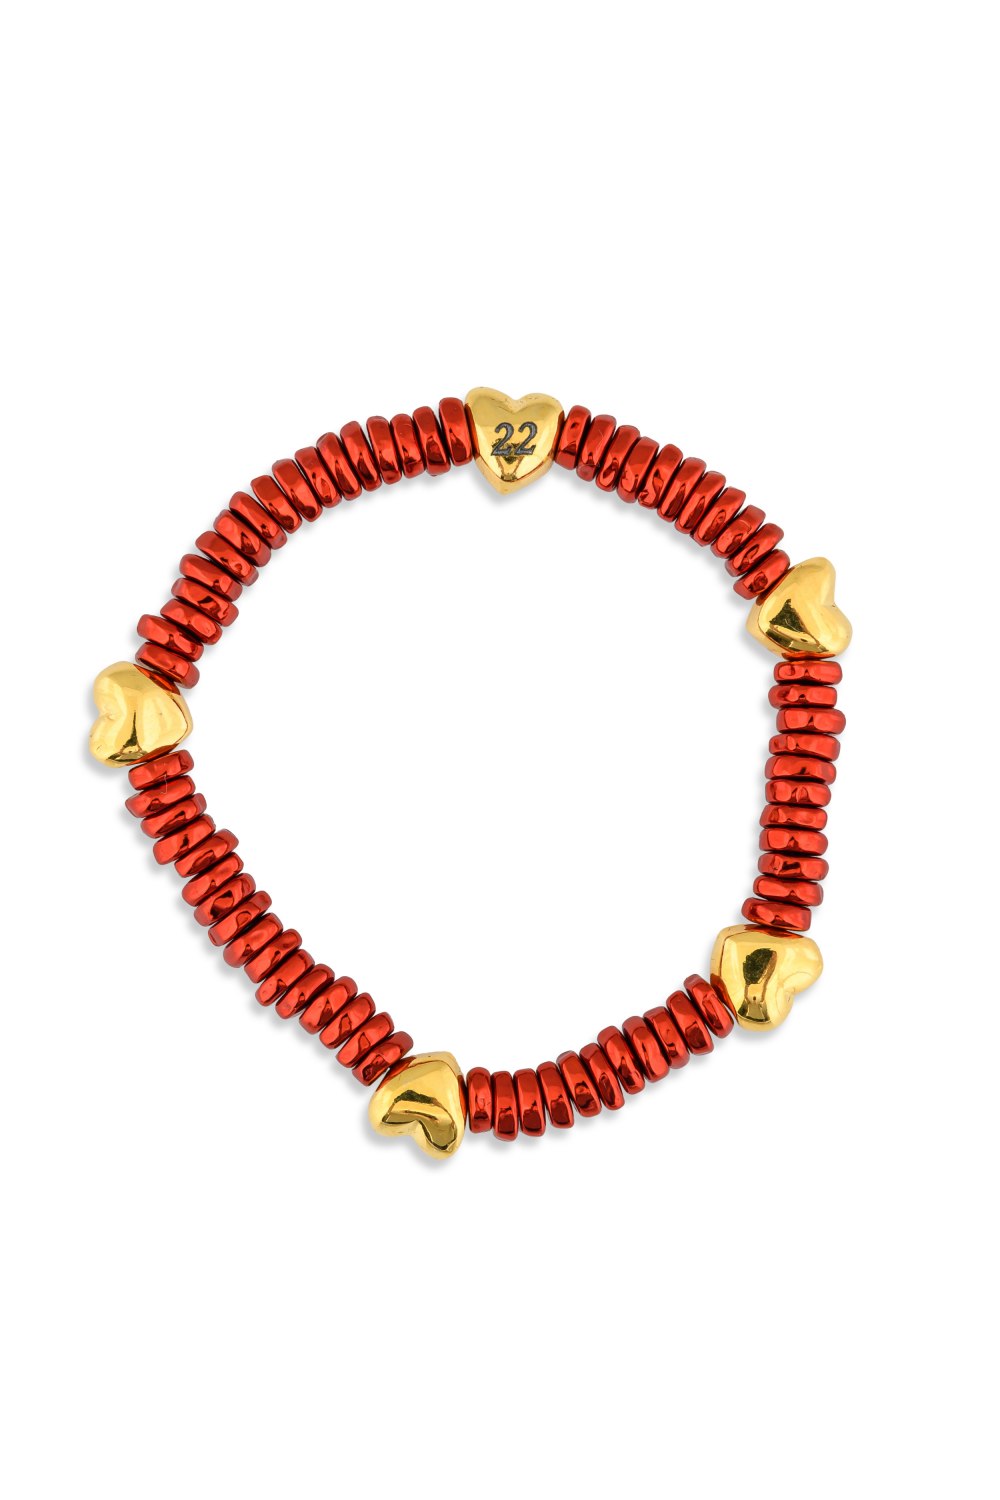 KESSARIS - Lucky Charm 2022 Lovely Red Metallic Beaded Bracelet